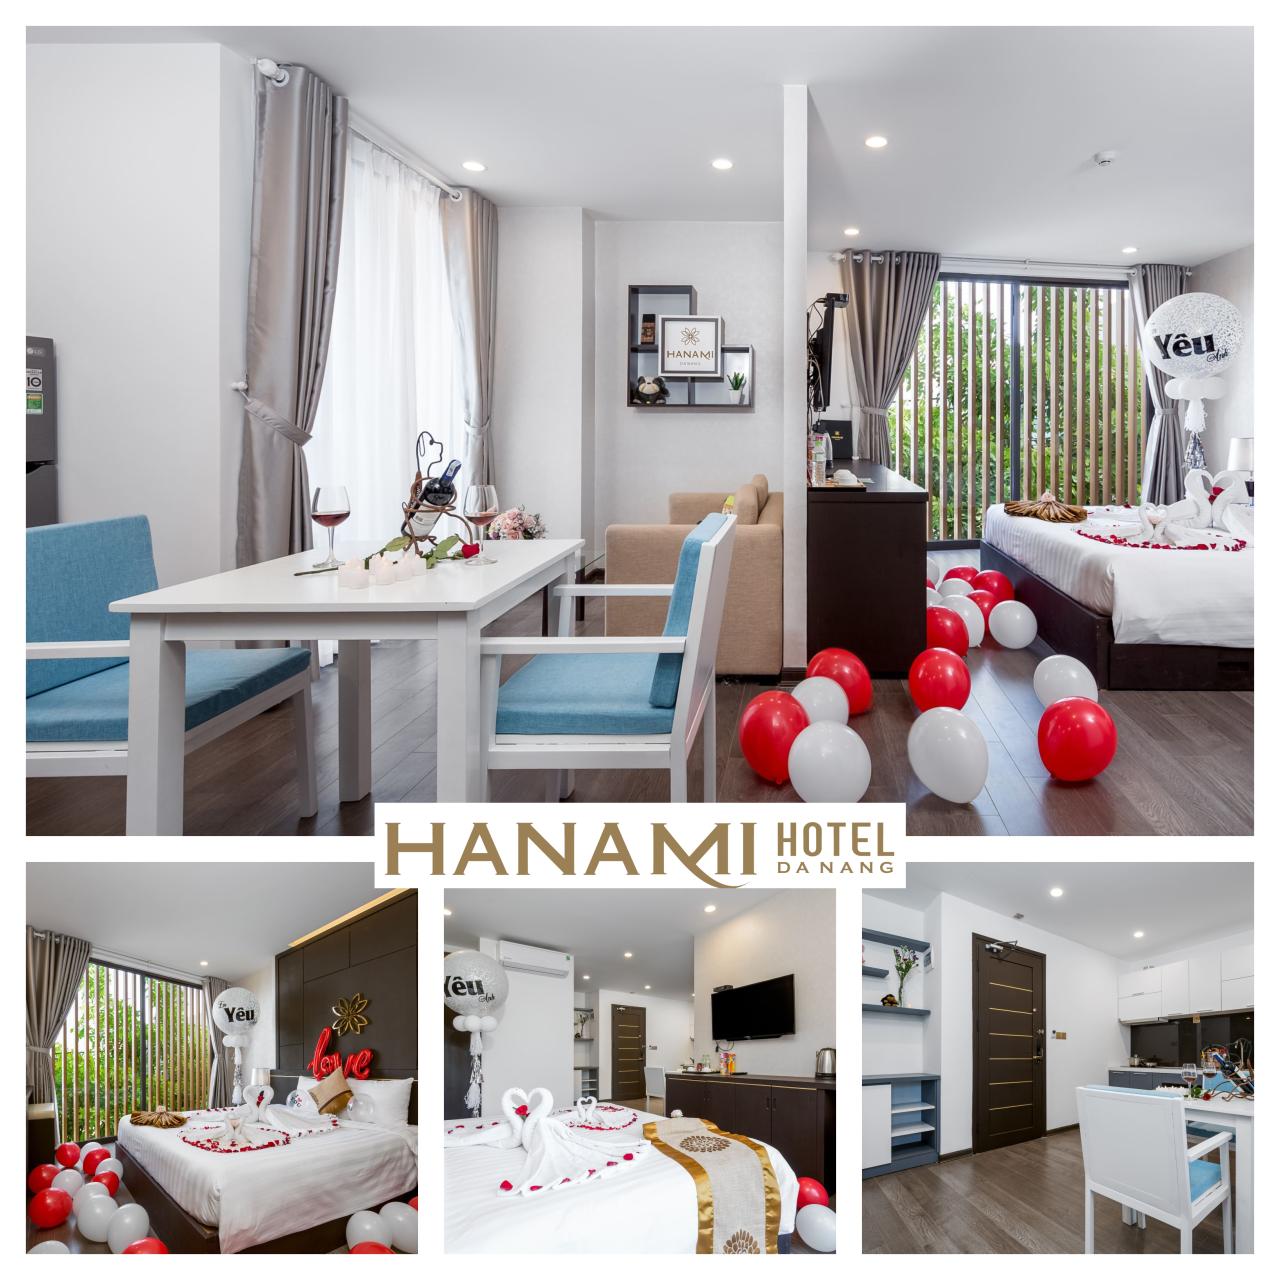 Hanami Hotel Danang: Phát triển và hoàn hiện không ngừng để hòa nhập cùng  du lịch Việt Nam - Tổng cục Du lịch